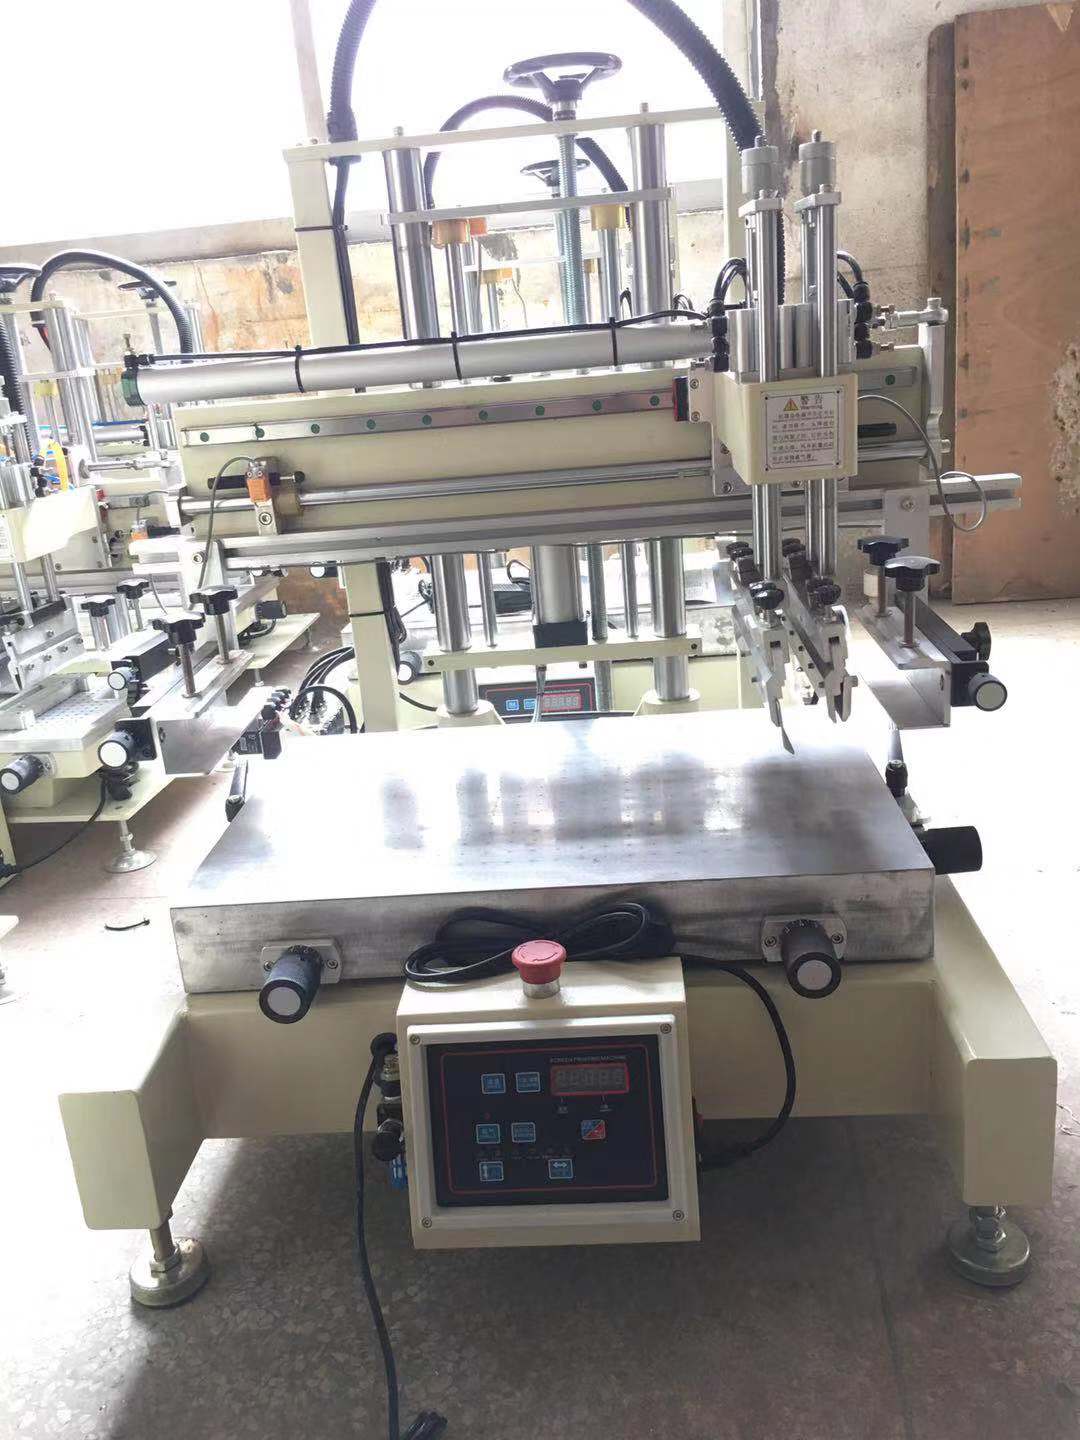 石家庄小型平面丝印机曲面滚印机全自动丝网印刷机厂家